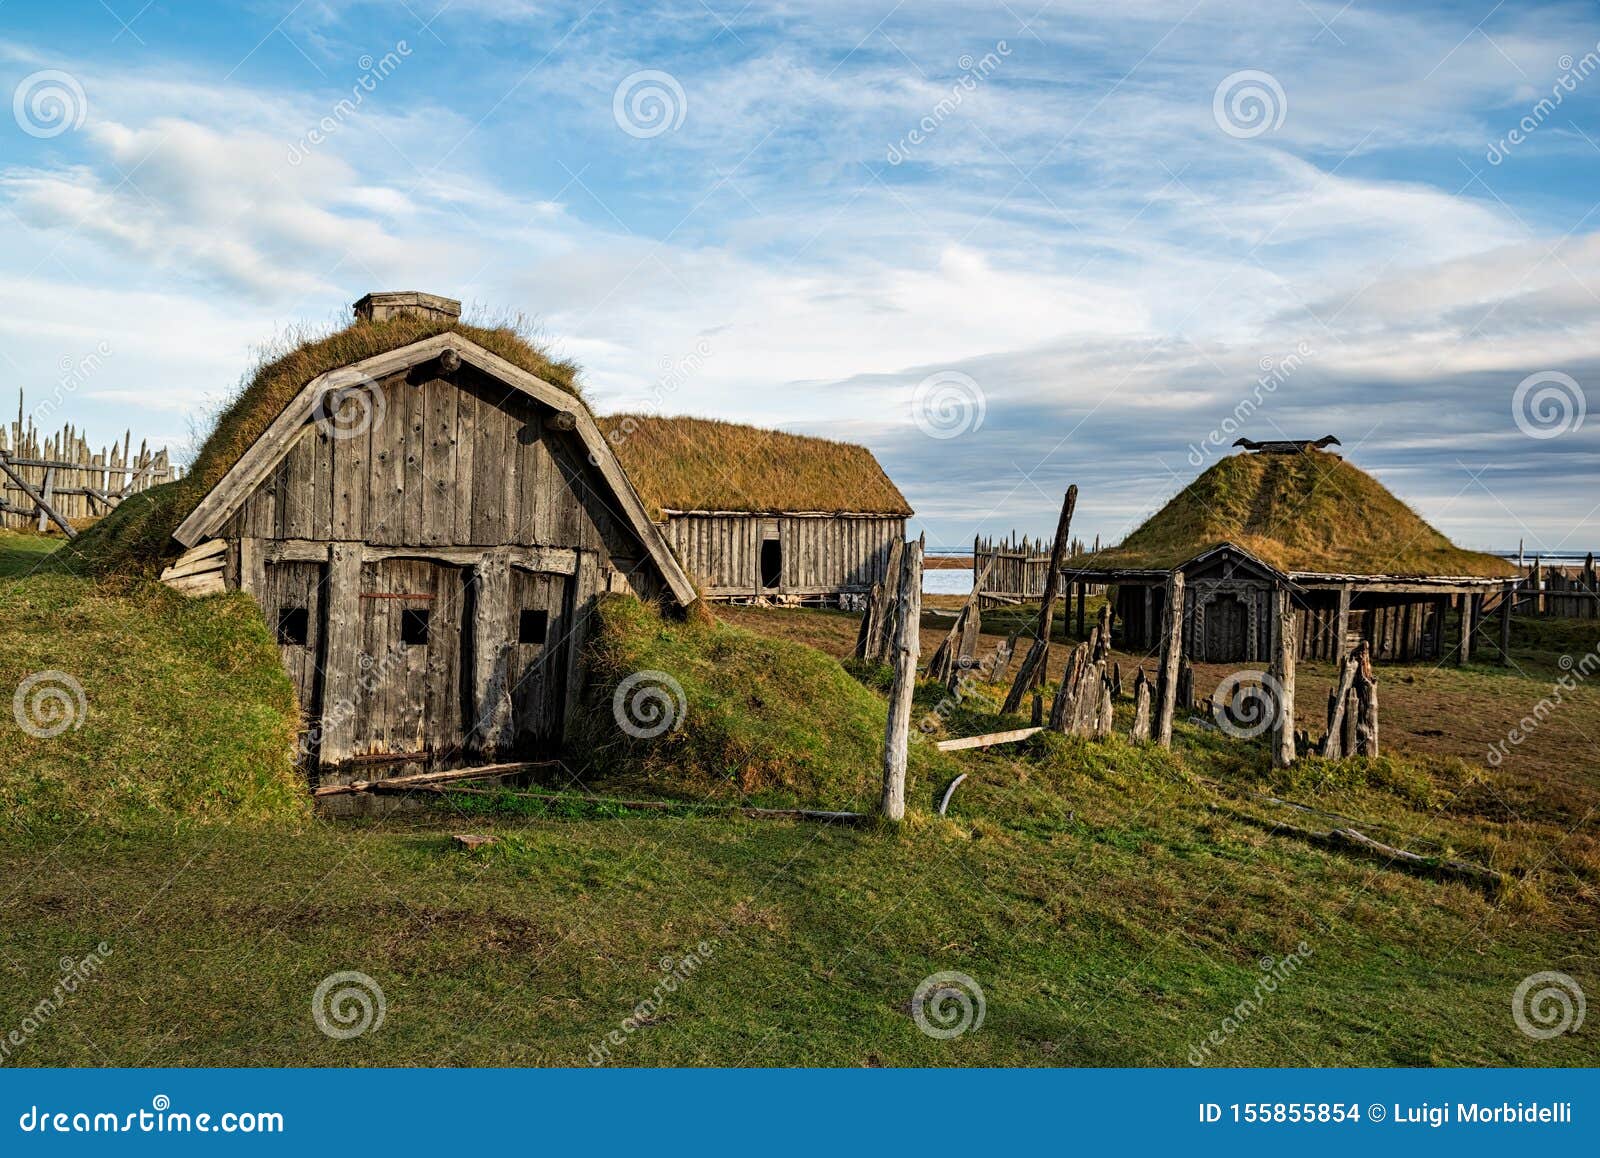 Viking village